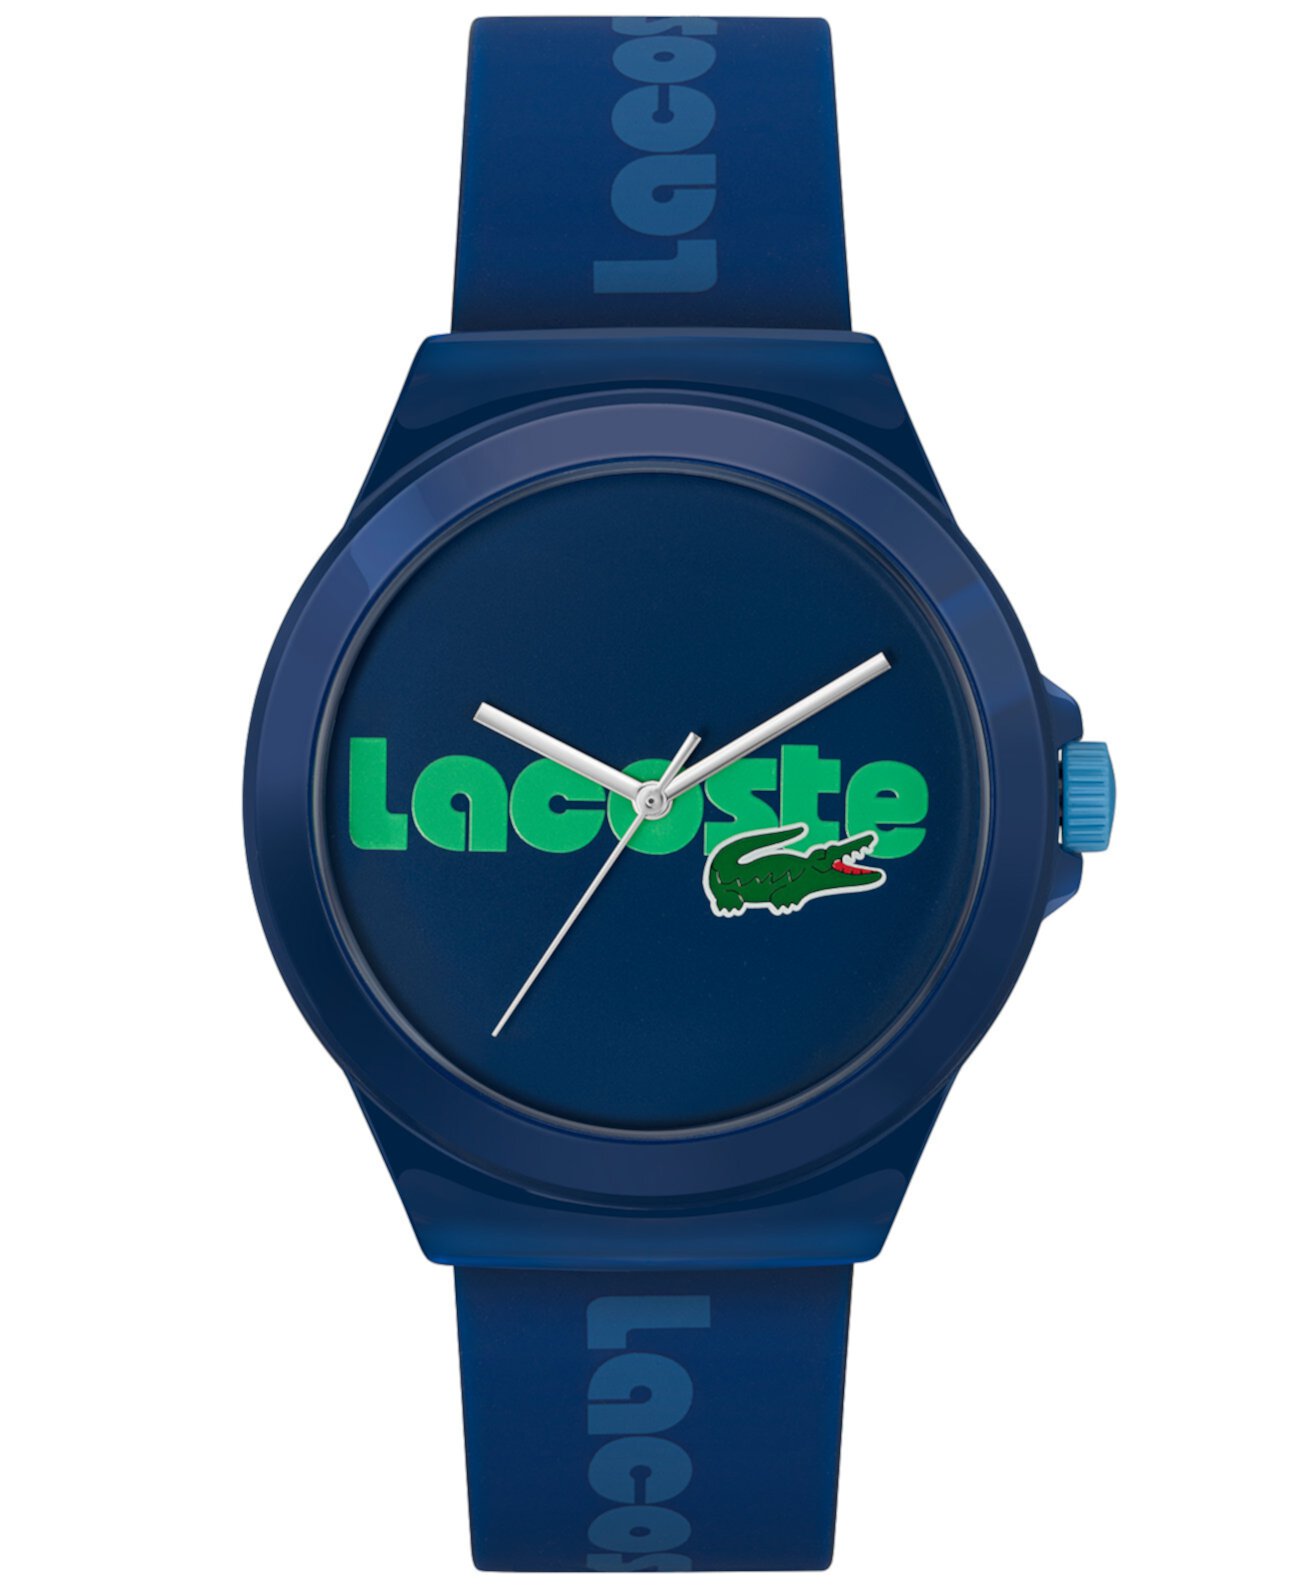 Мужские часы Neocroc с синим кварцевым силиконовым ремешком, 42 мм Lacoste